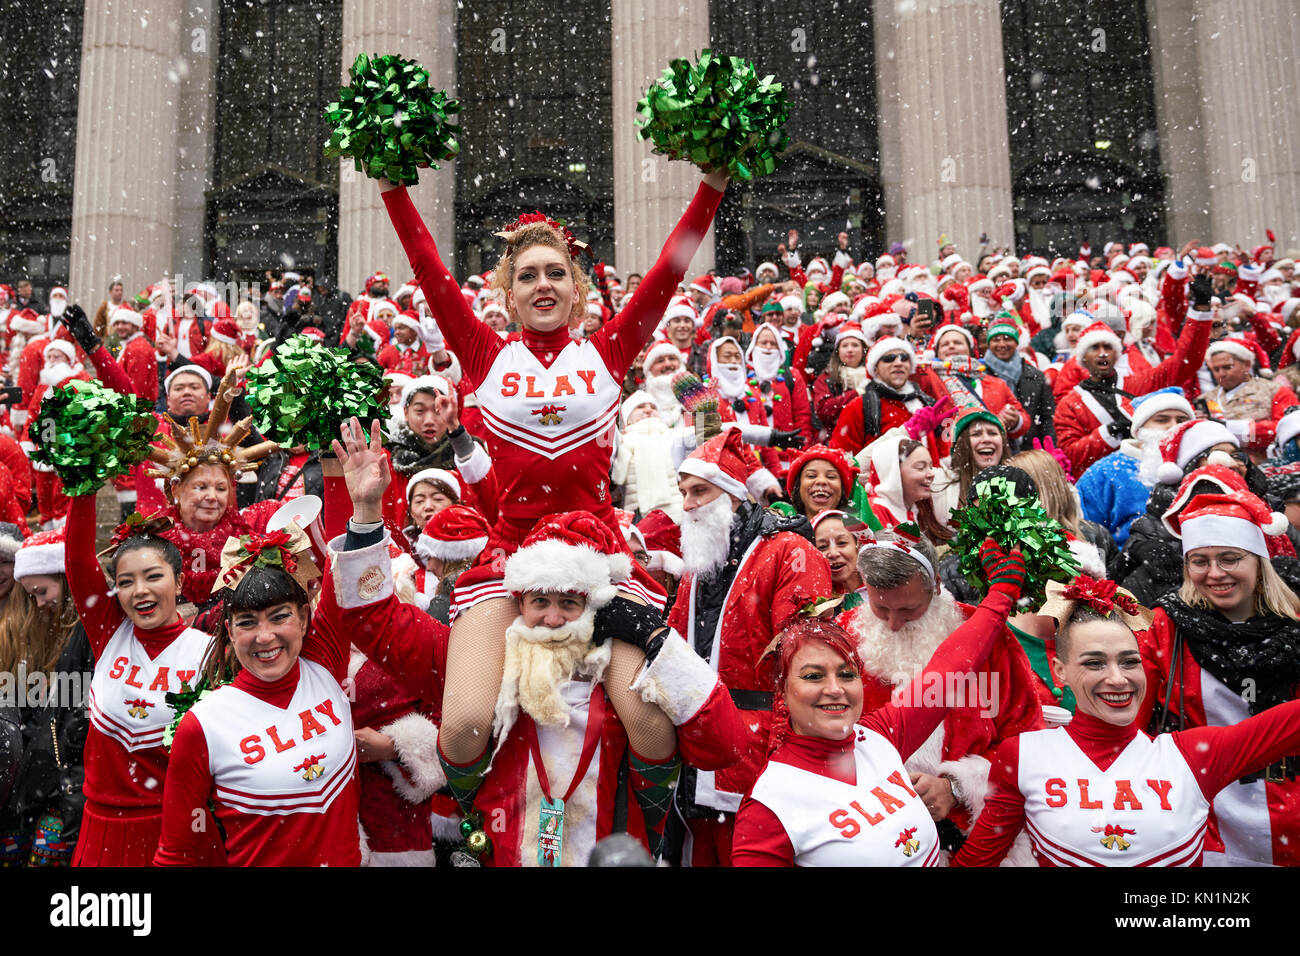 New York, États-Unis, 9 déc 2017. Des gens habillés en Père Noël posent pour une photo de groupe lors d'une "fête" antacon rassembler sous une tempête de foule. Photo par Enrique Shore/Alamy Live News Banque D'Images